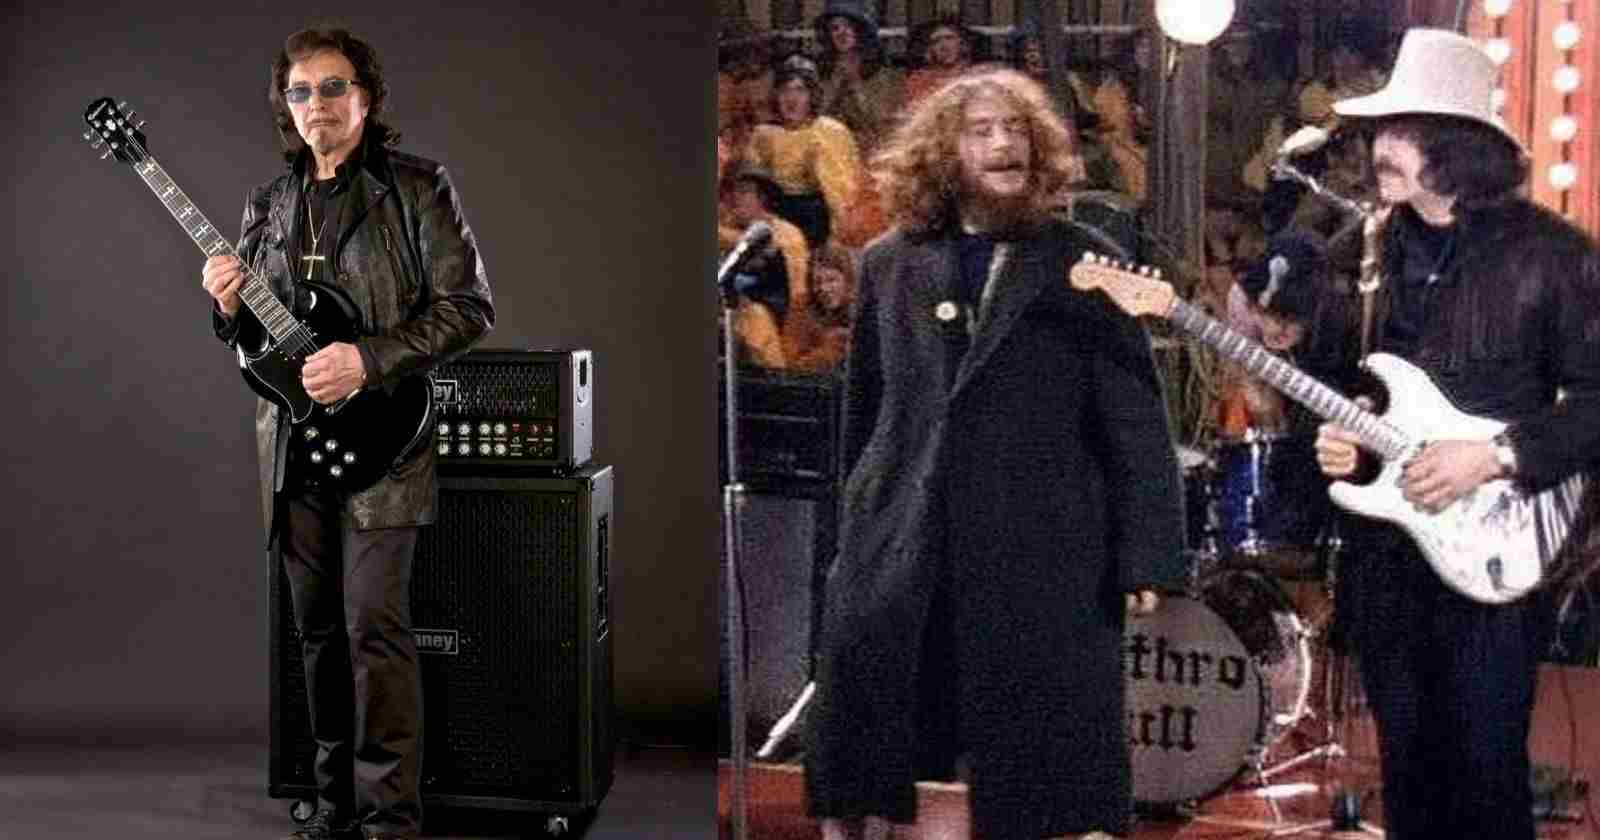 Tony Iommi Jethro Tull